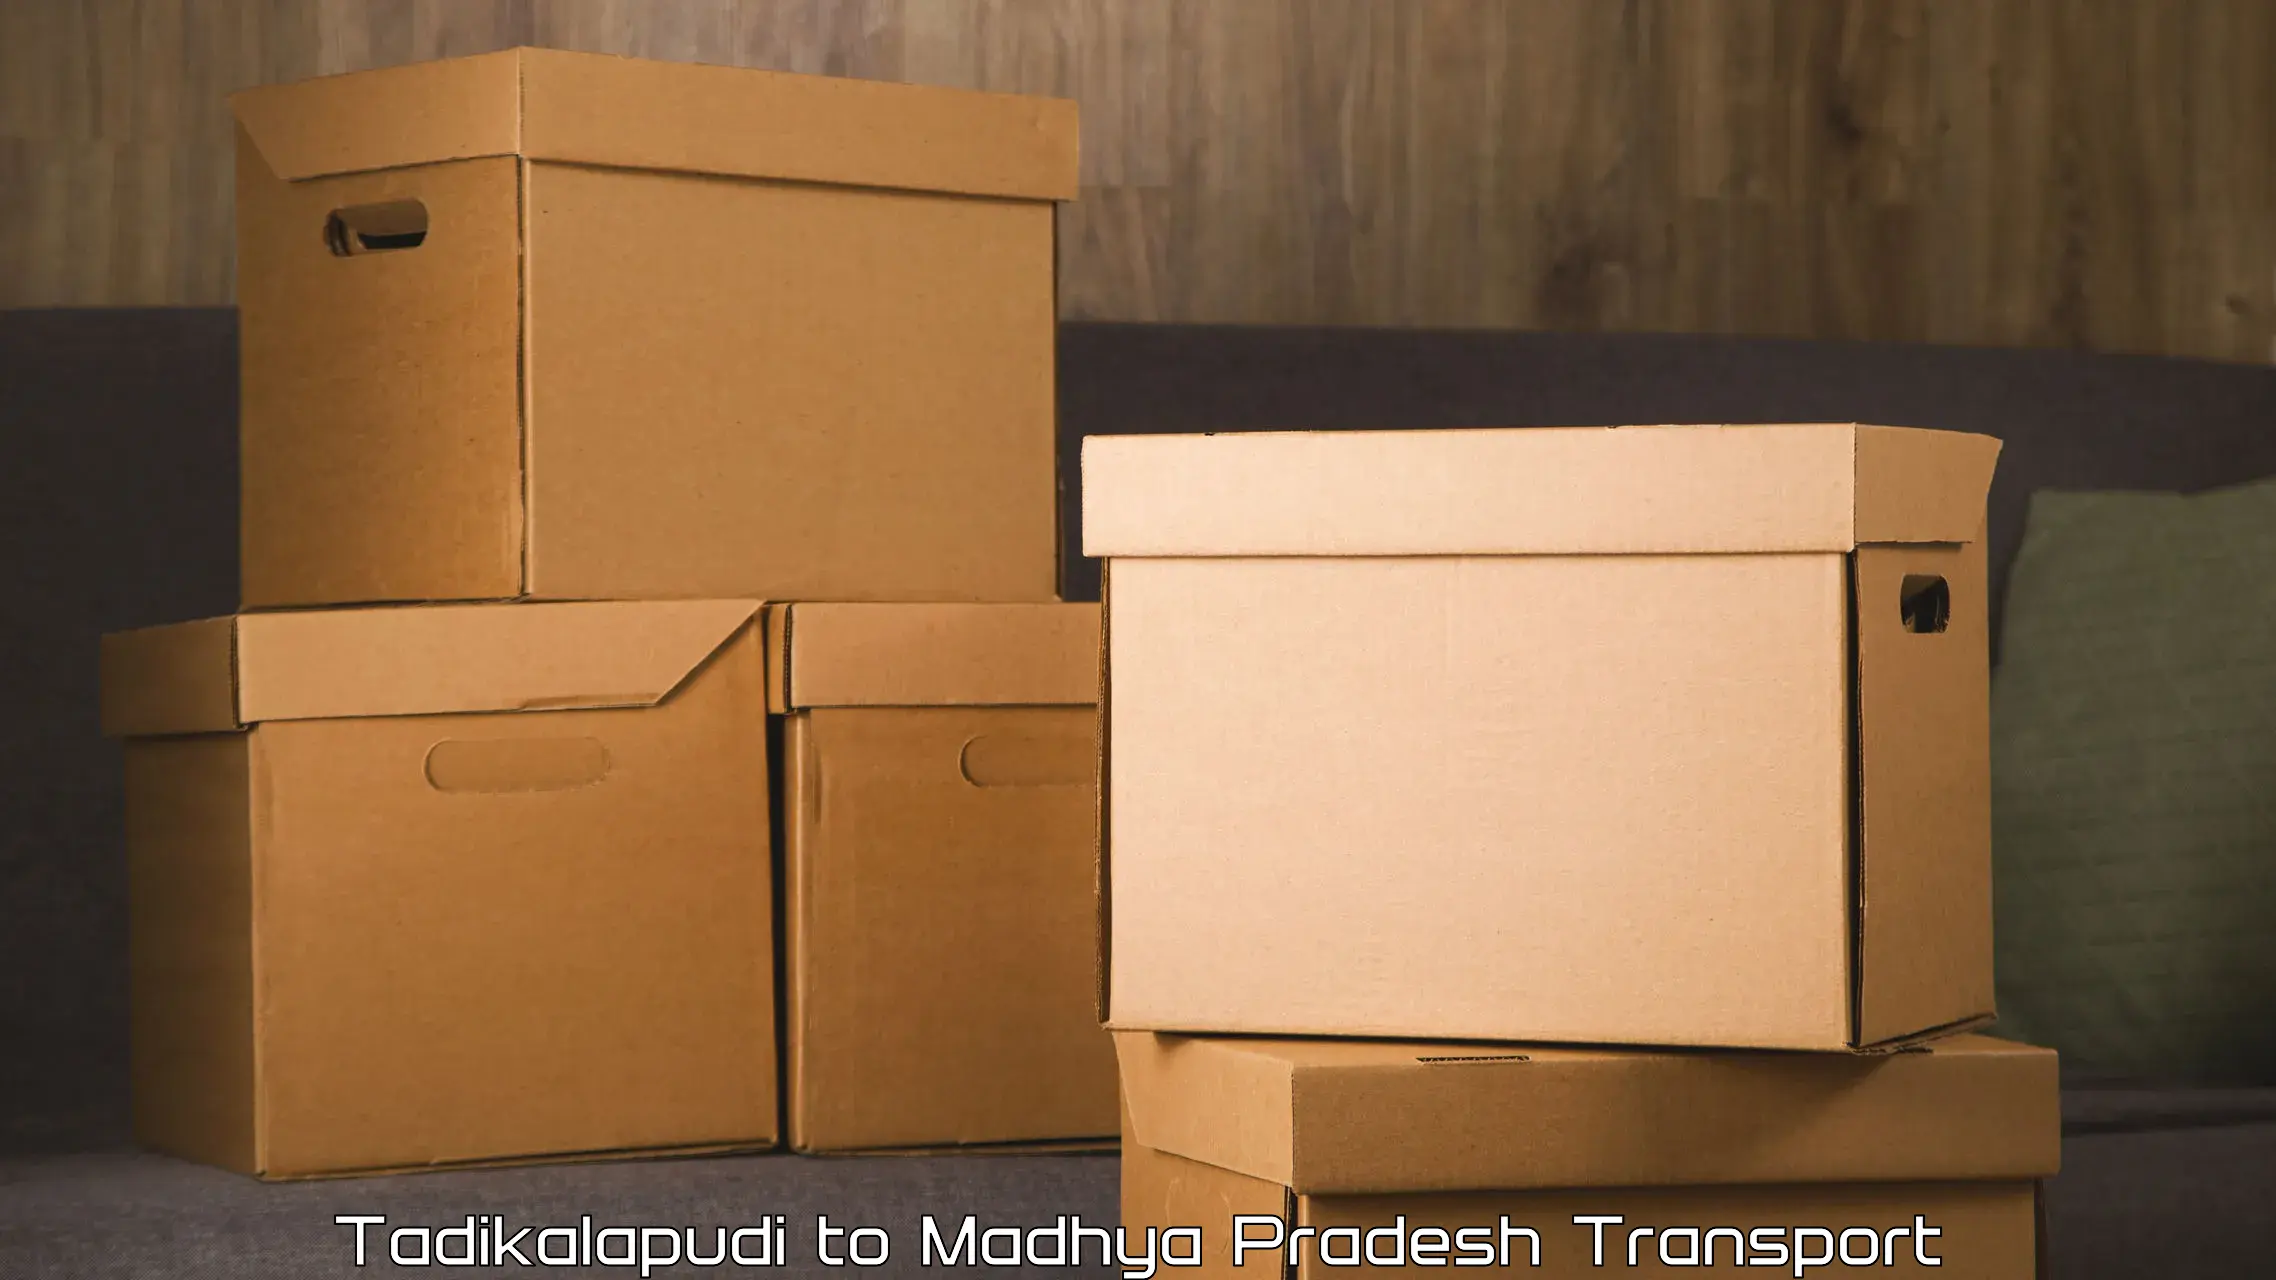 Daily transport service Tadikalapudi to Khajuraho